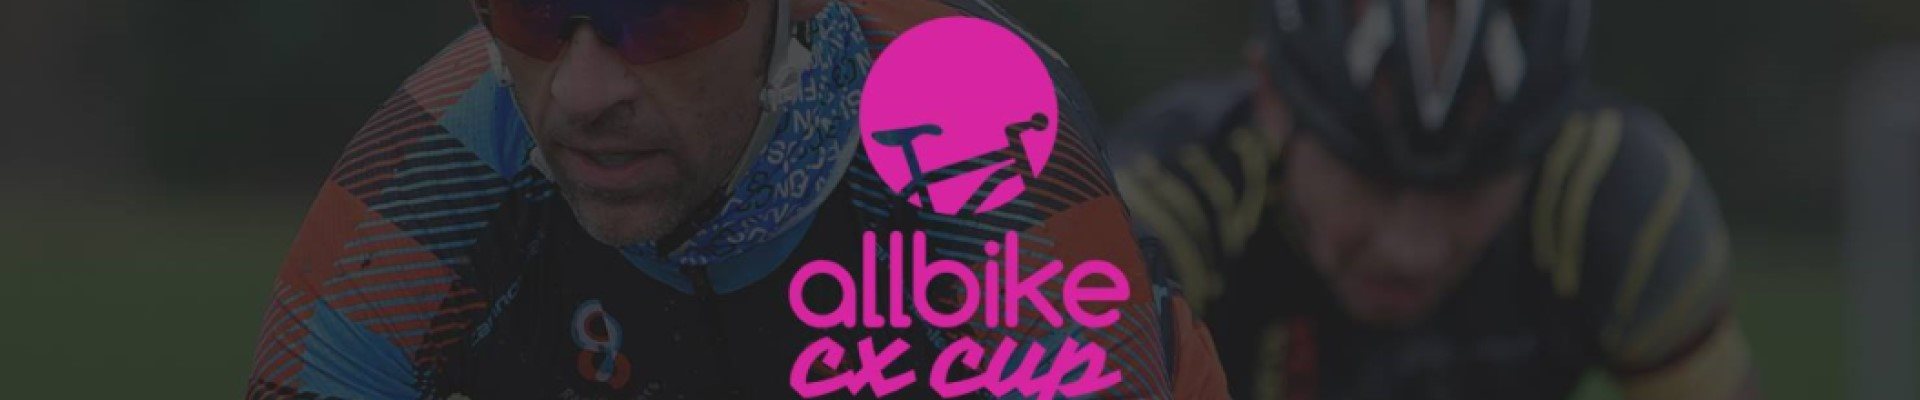 Allbike CX cup #4 Aalborg